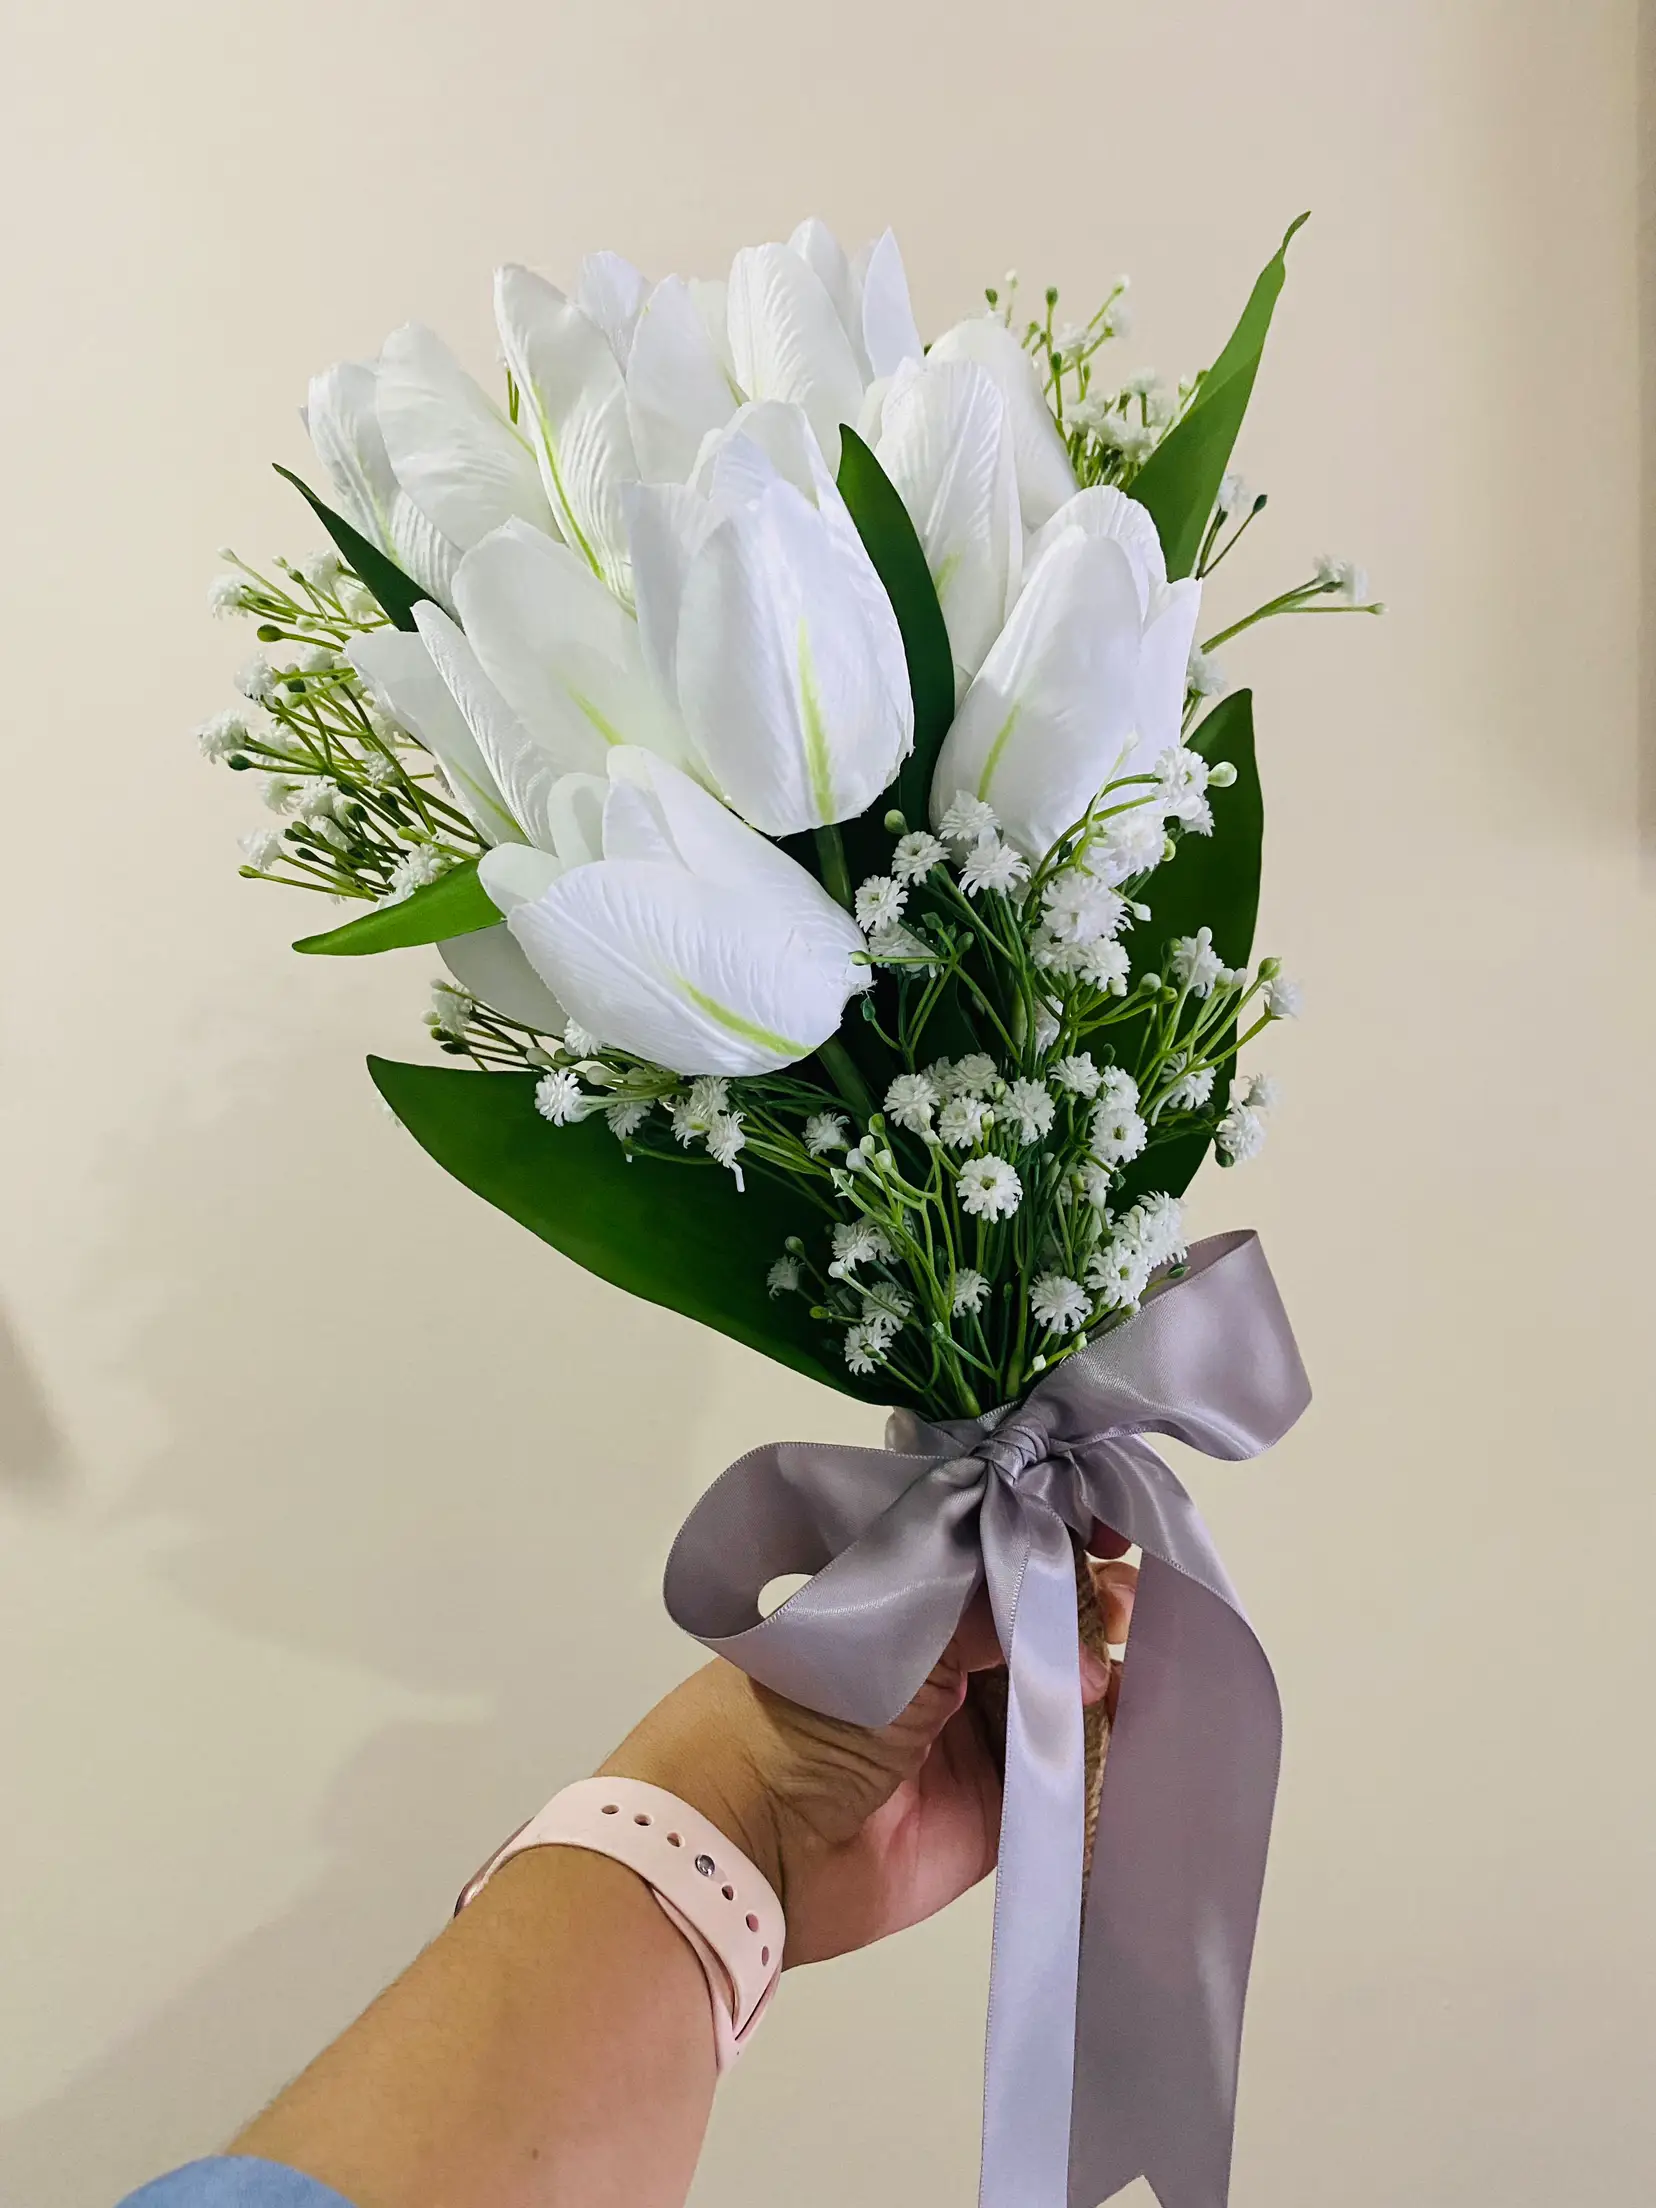 Panduan Untuk Membeli Bunga Perkahwinan Di Kedai Bunga